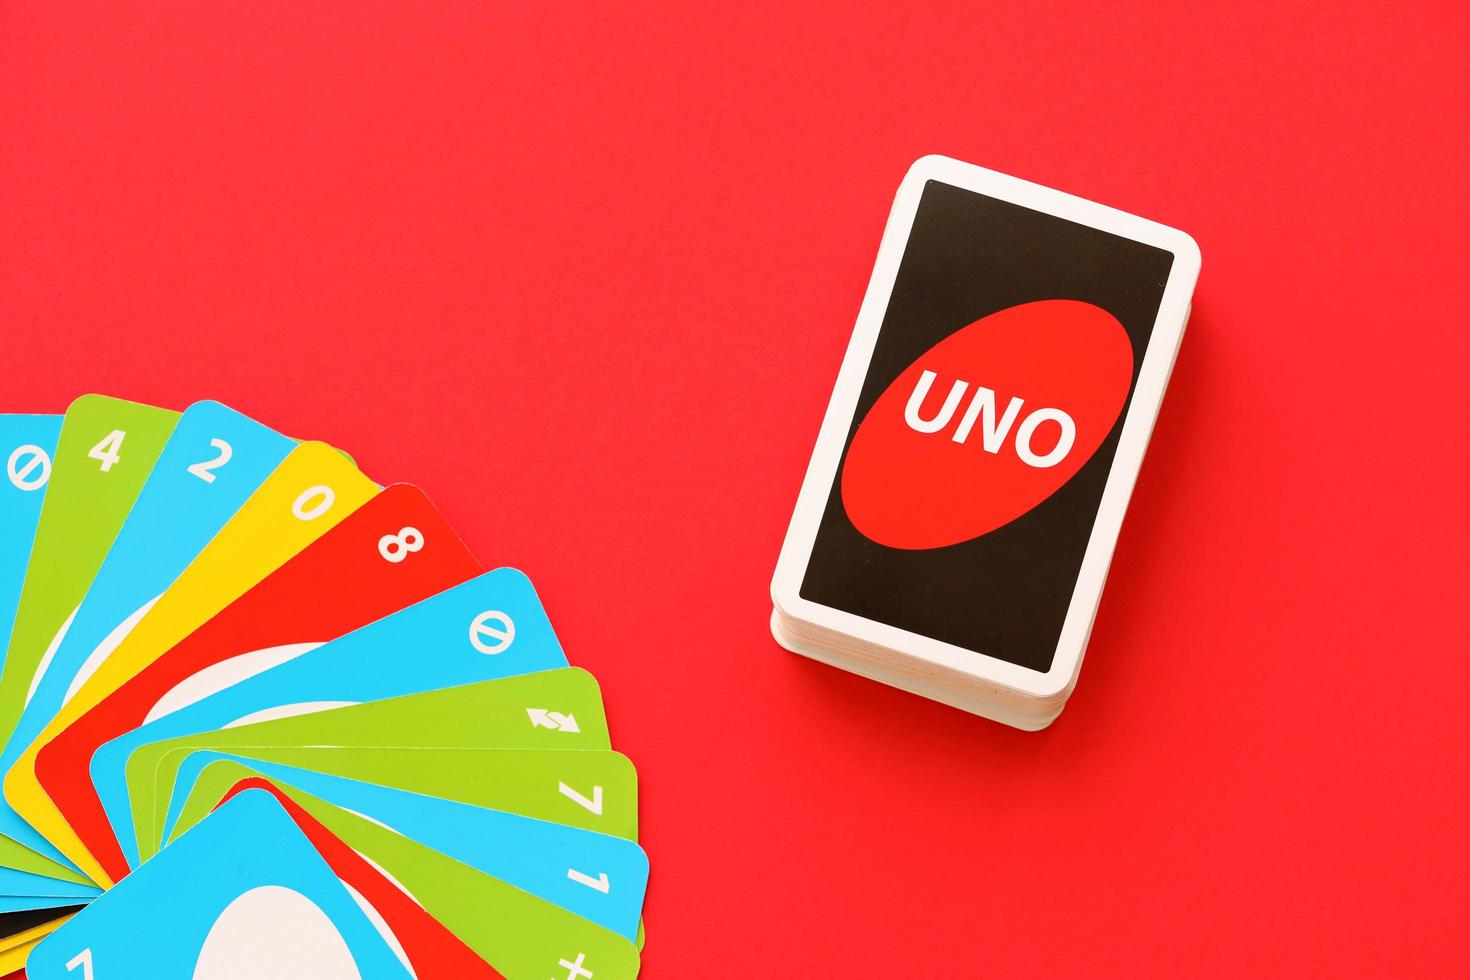 Nếu bạn muốn tìm một trò chơi thú vị để chơi với gia đình hoặc bạn bè, Uno là lựa chọn tuyệt vời. Với những hình ảnh liên quan đến UNO game cards trên trang web của chúng tôi, bạn sẽ biết thêm về các loại thẻ khác nhau trong trò chơi này và có thể tạo ra nhiều phương pháp chơi mới mẻ để tăng thêm niềm vui cho trò chơi.